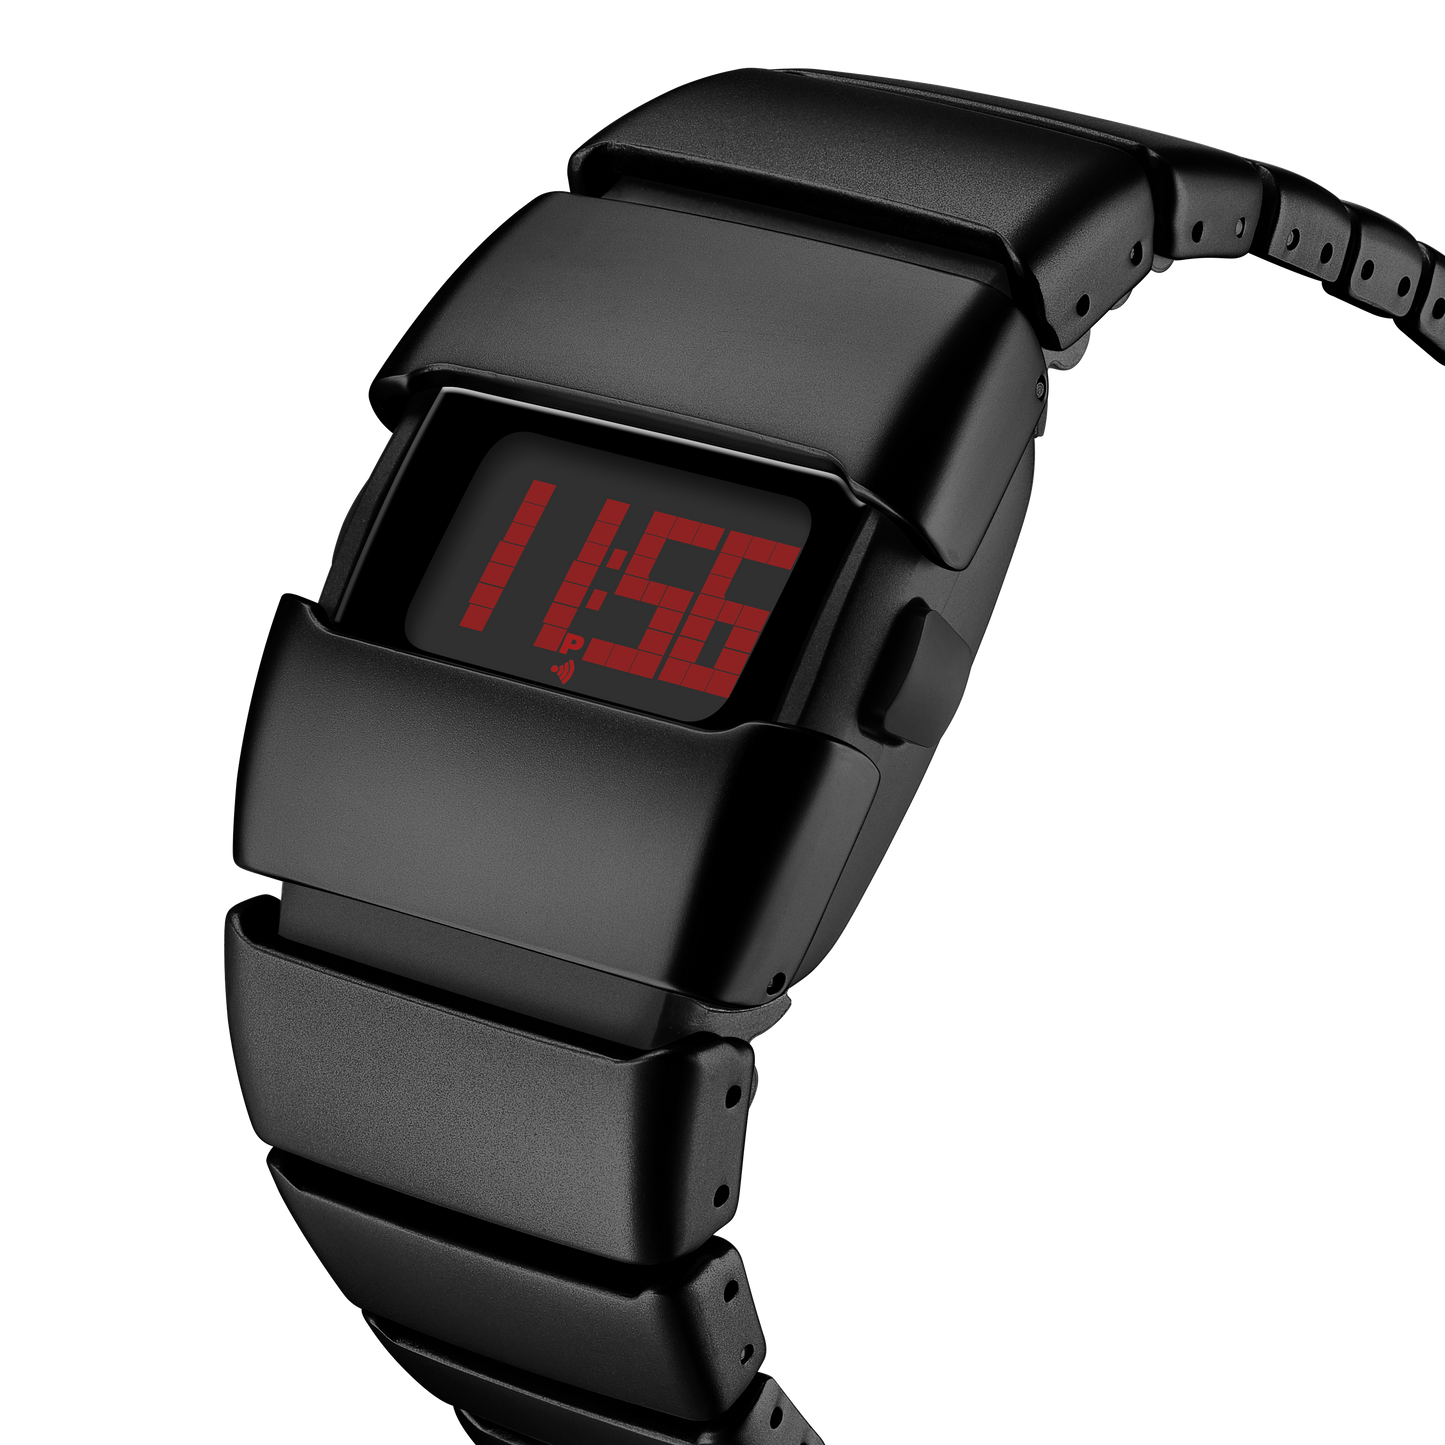 X6000 Cyber Watch